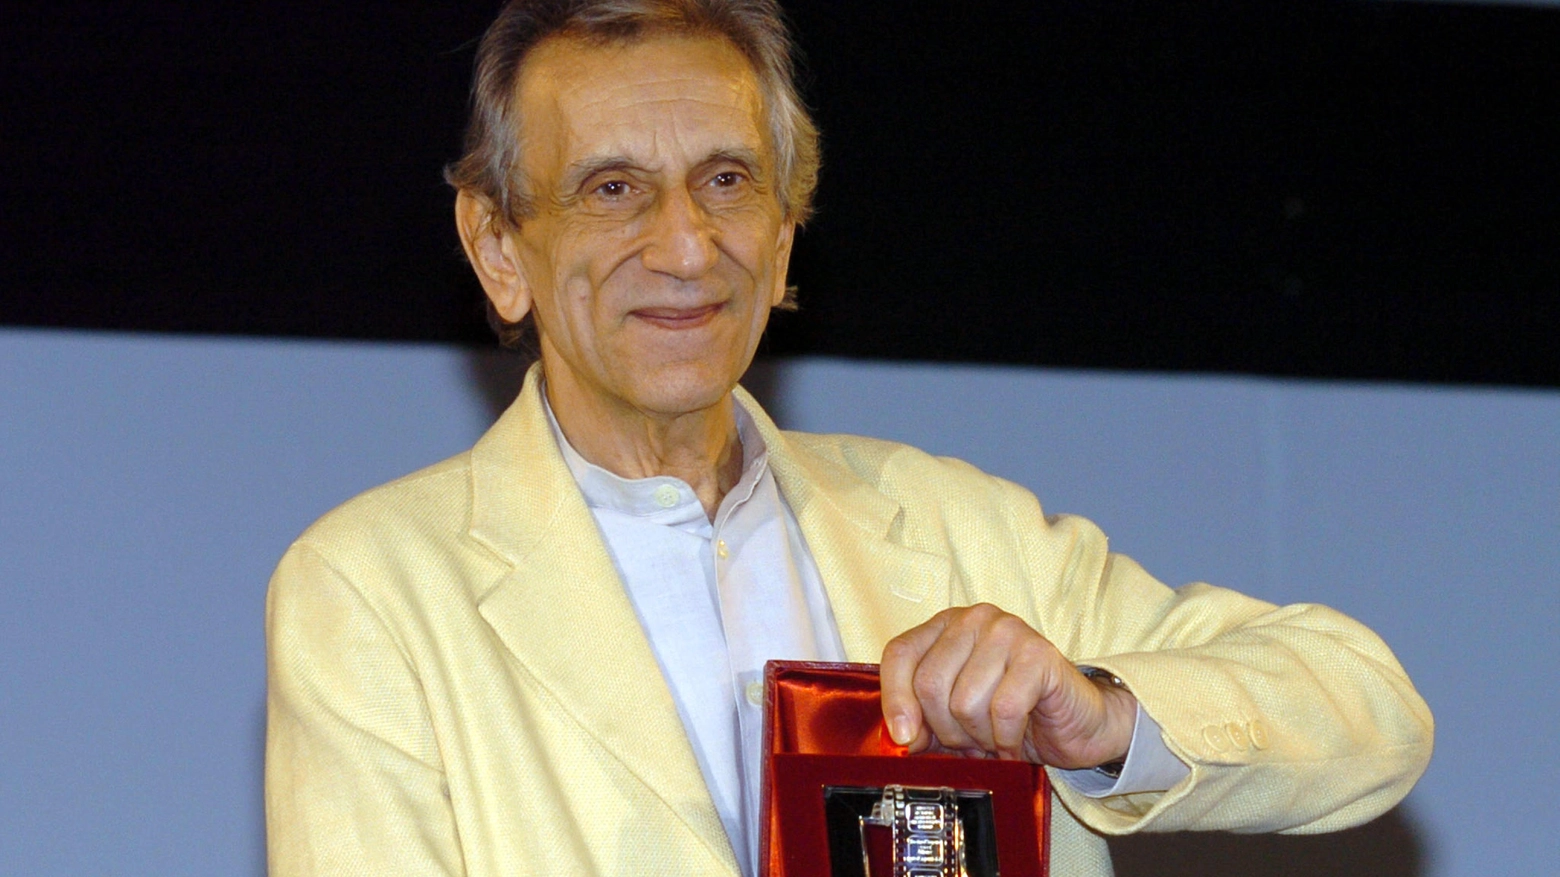 Roberto Herlitzka mostra il Nastro d' argento vinto come miglior attore protagonista per il film  "Buongiorno, notte"